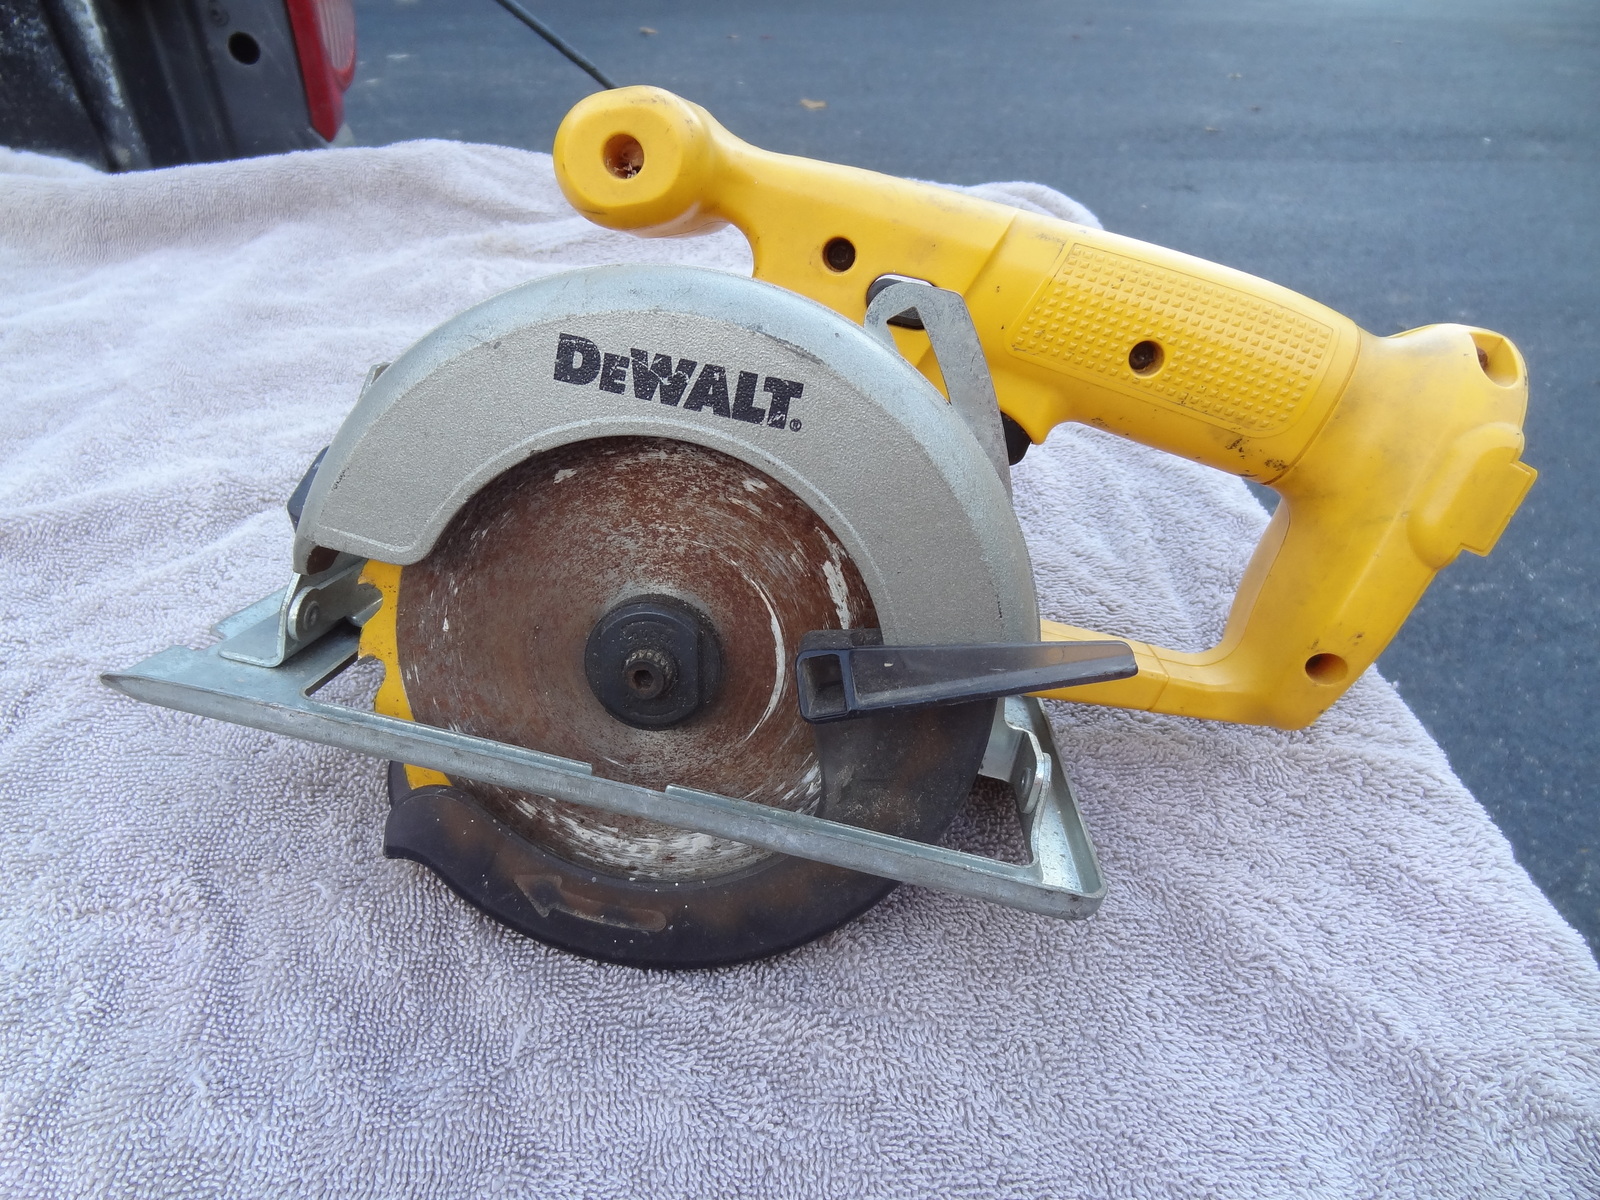 Dewalt DW935 Cordless Circular Saw 1/4